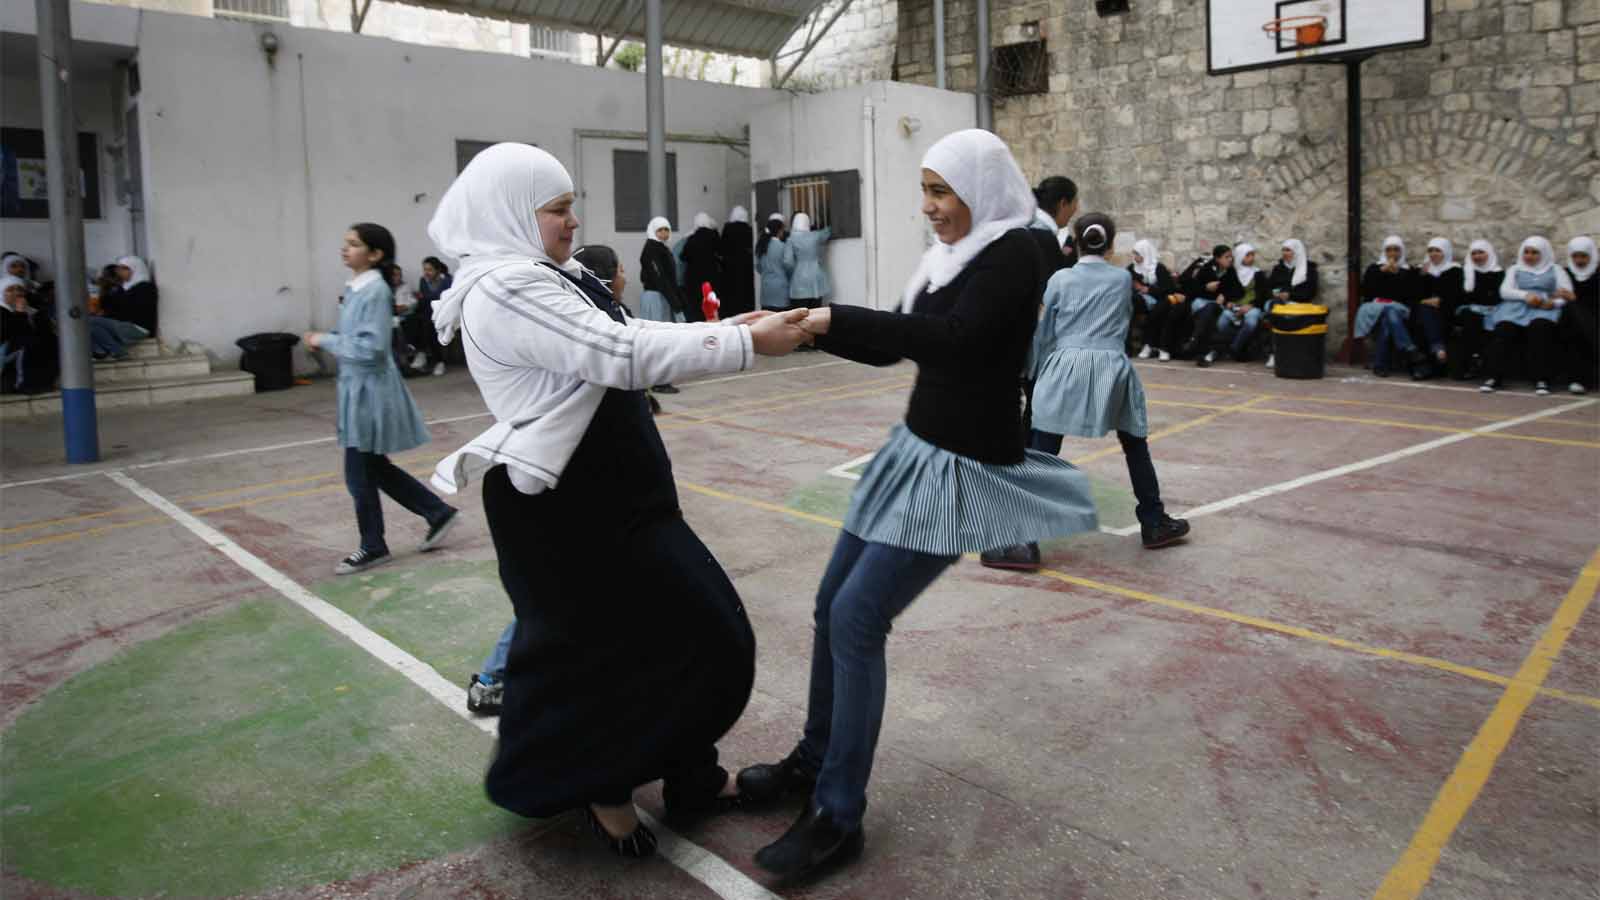 فتيات عربيات يلعبن في فناء مدرسة في مدينة القدس القديمة. أرشيف. لا علاقة للمتصورات مع هذه المقالة (تصوير: ميريام ألتشير / فلاش 90)